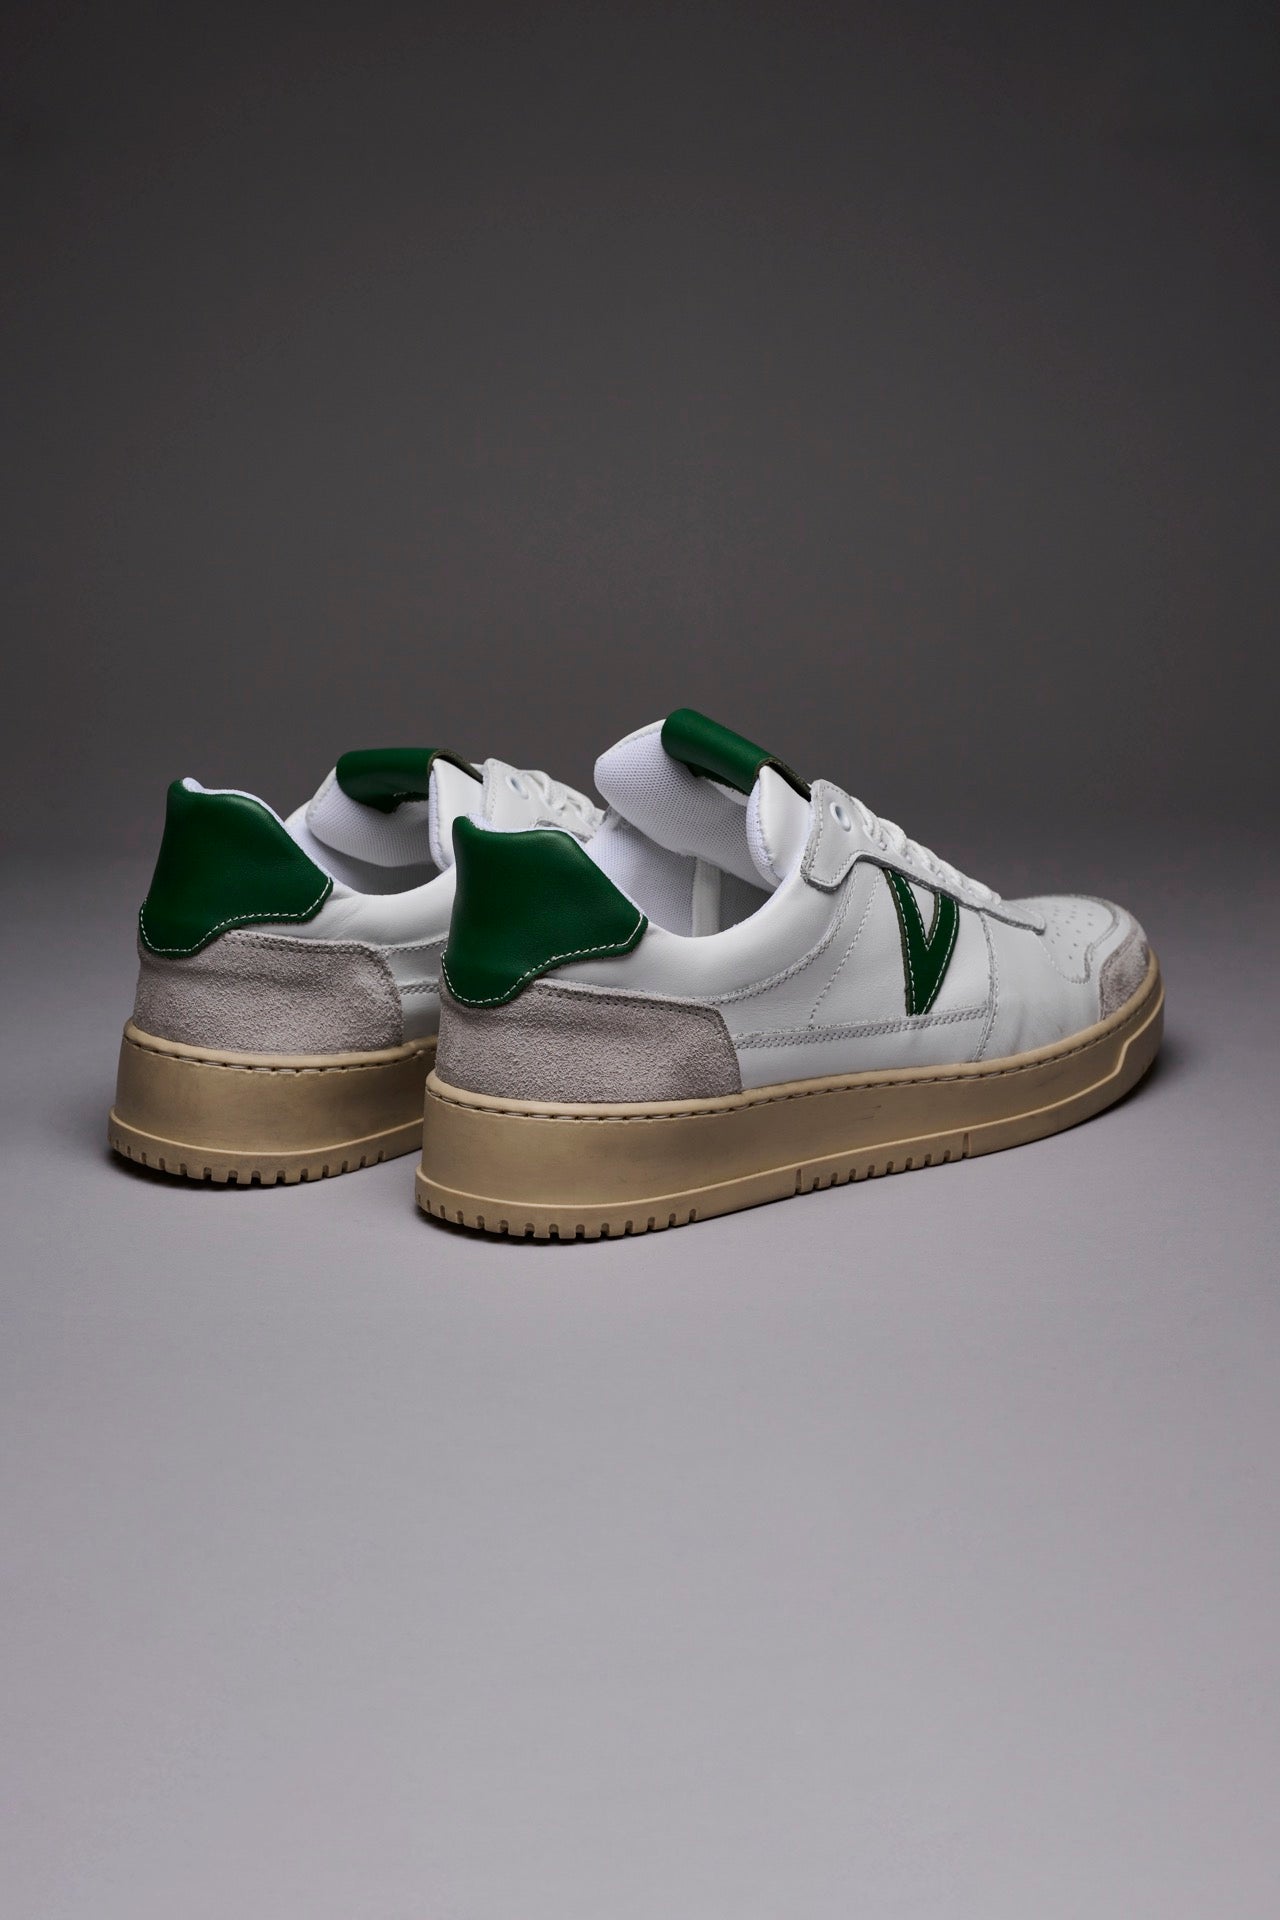 COLLEGE - Sneakers Bianca con retro e inserto Verde